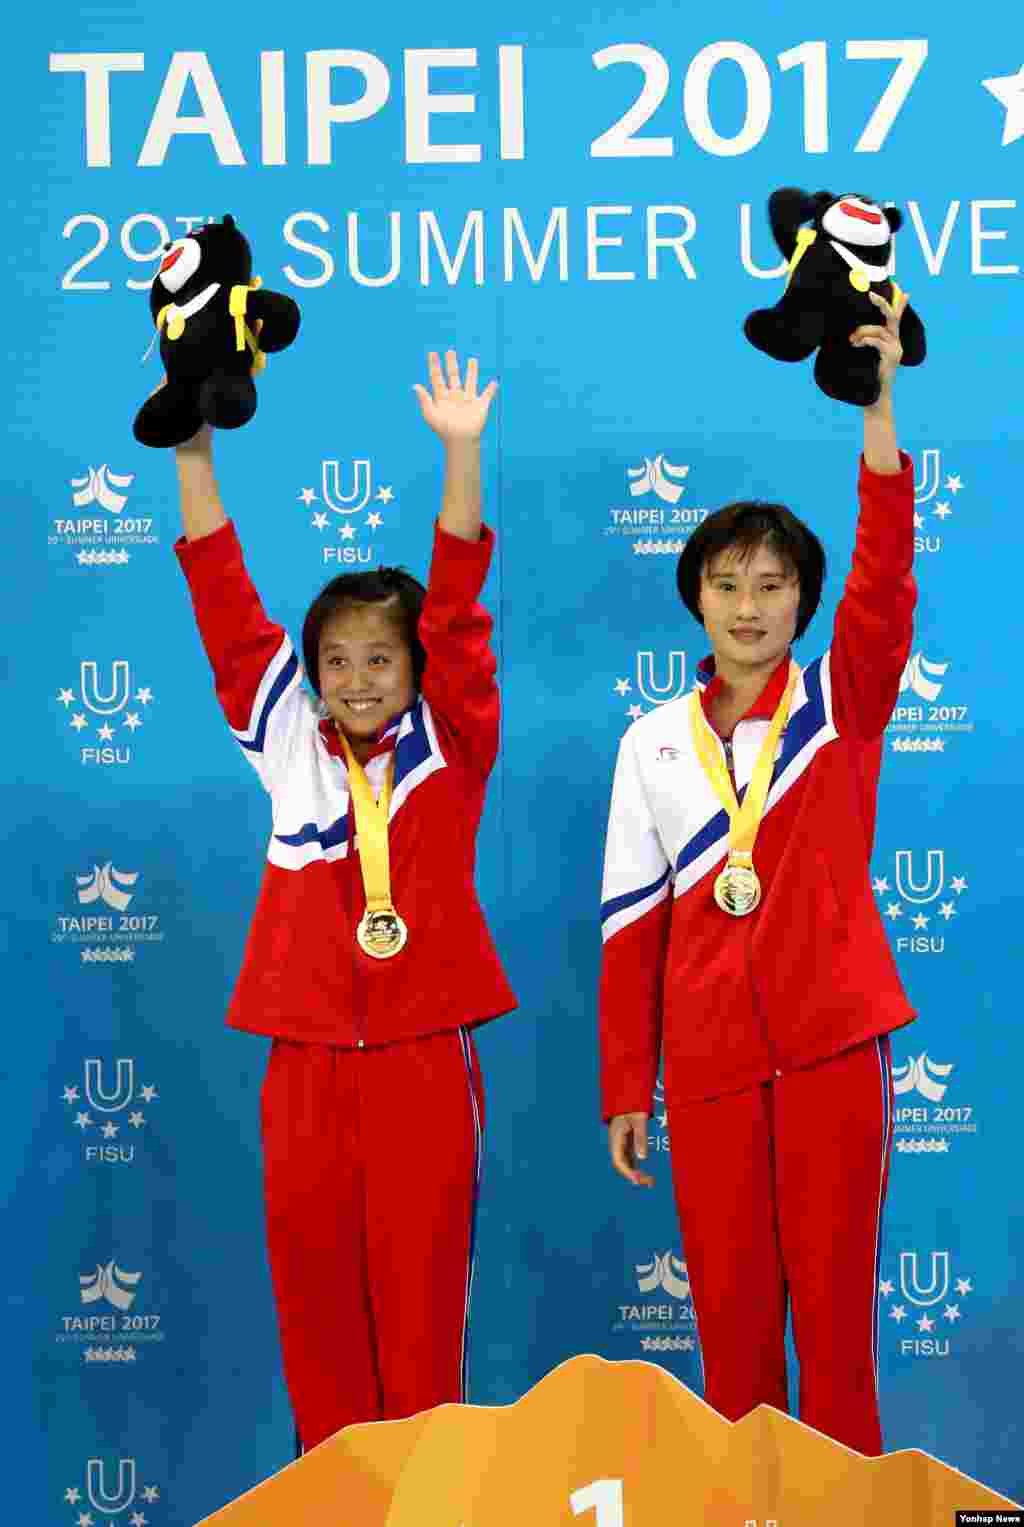 2017 하계유니버시아드 여자 다이빙 10m 플랫폼 싱크로에서 금메달을 획득한 북한의 김국향 선수(왼쪽)와 김운향 선수가 메달을 수여받은 뒤 인사하고 있다.